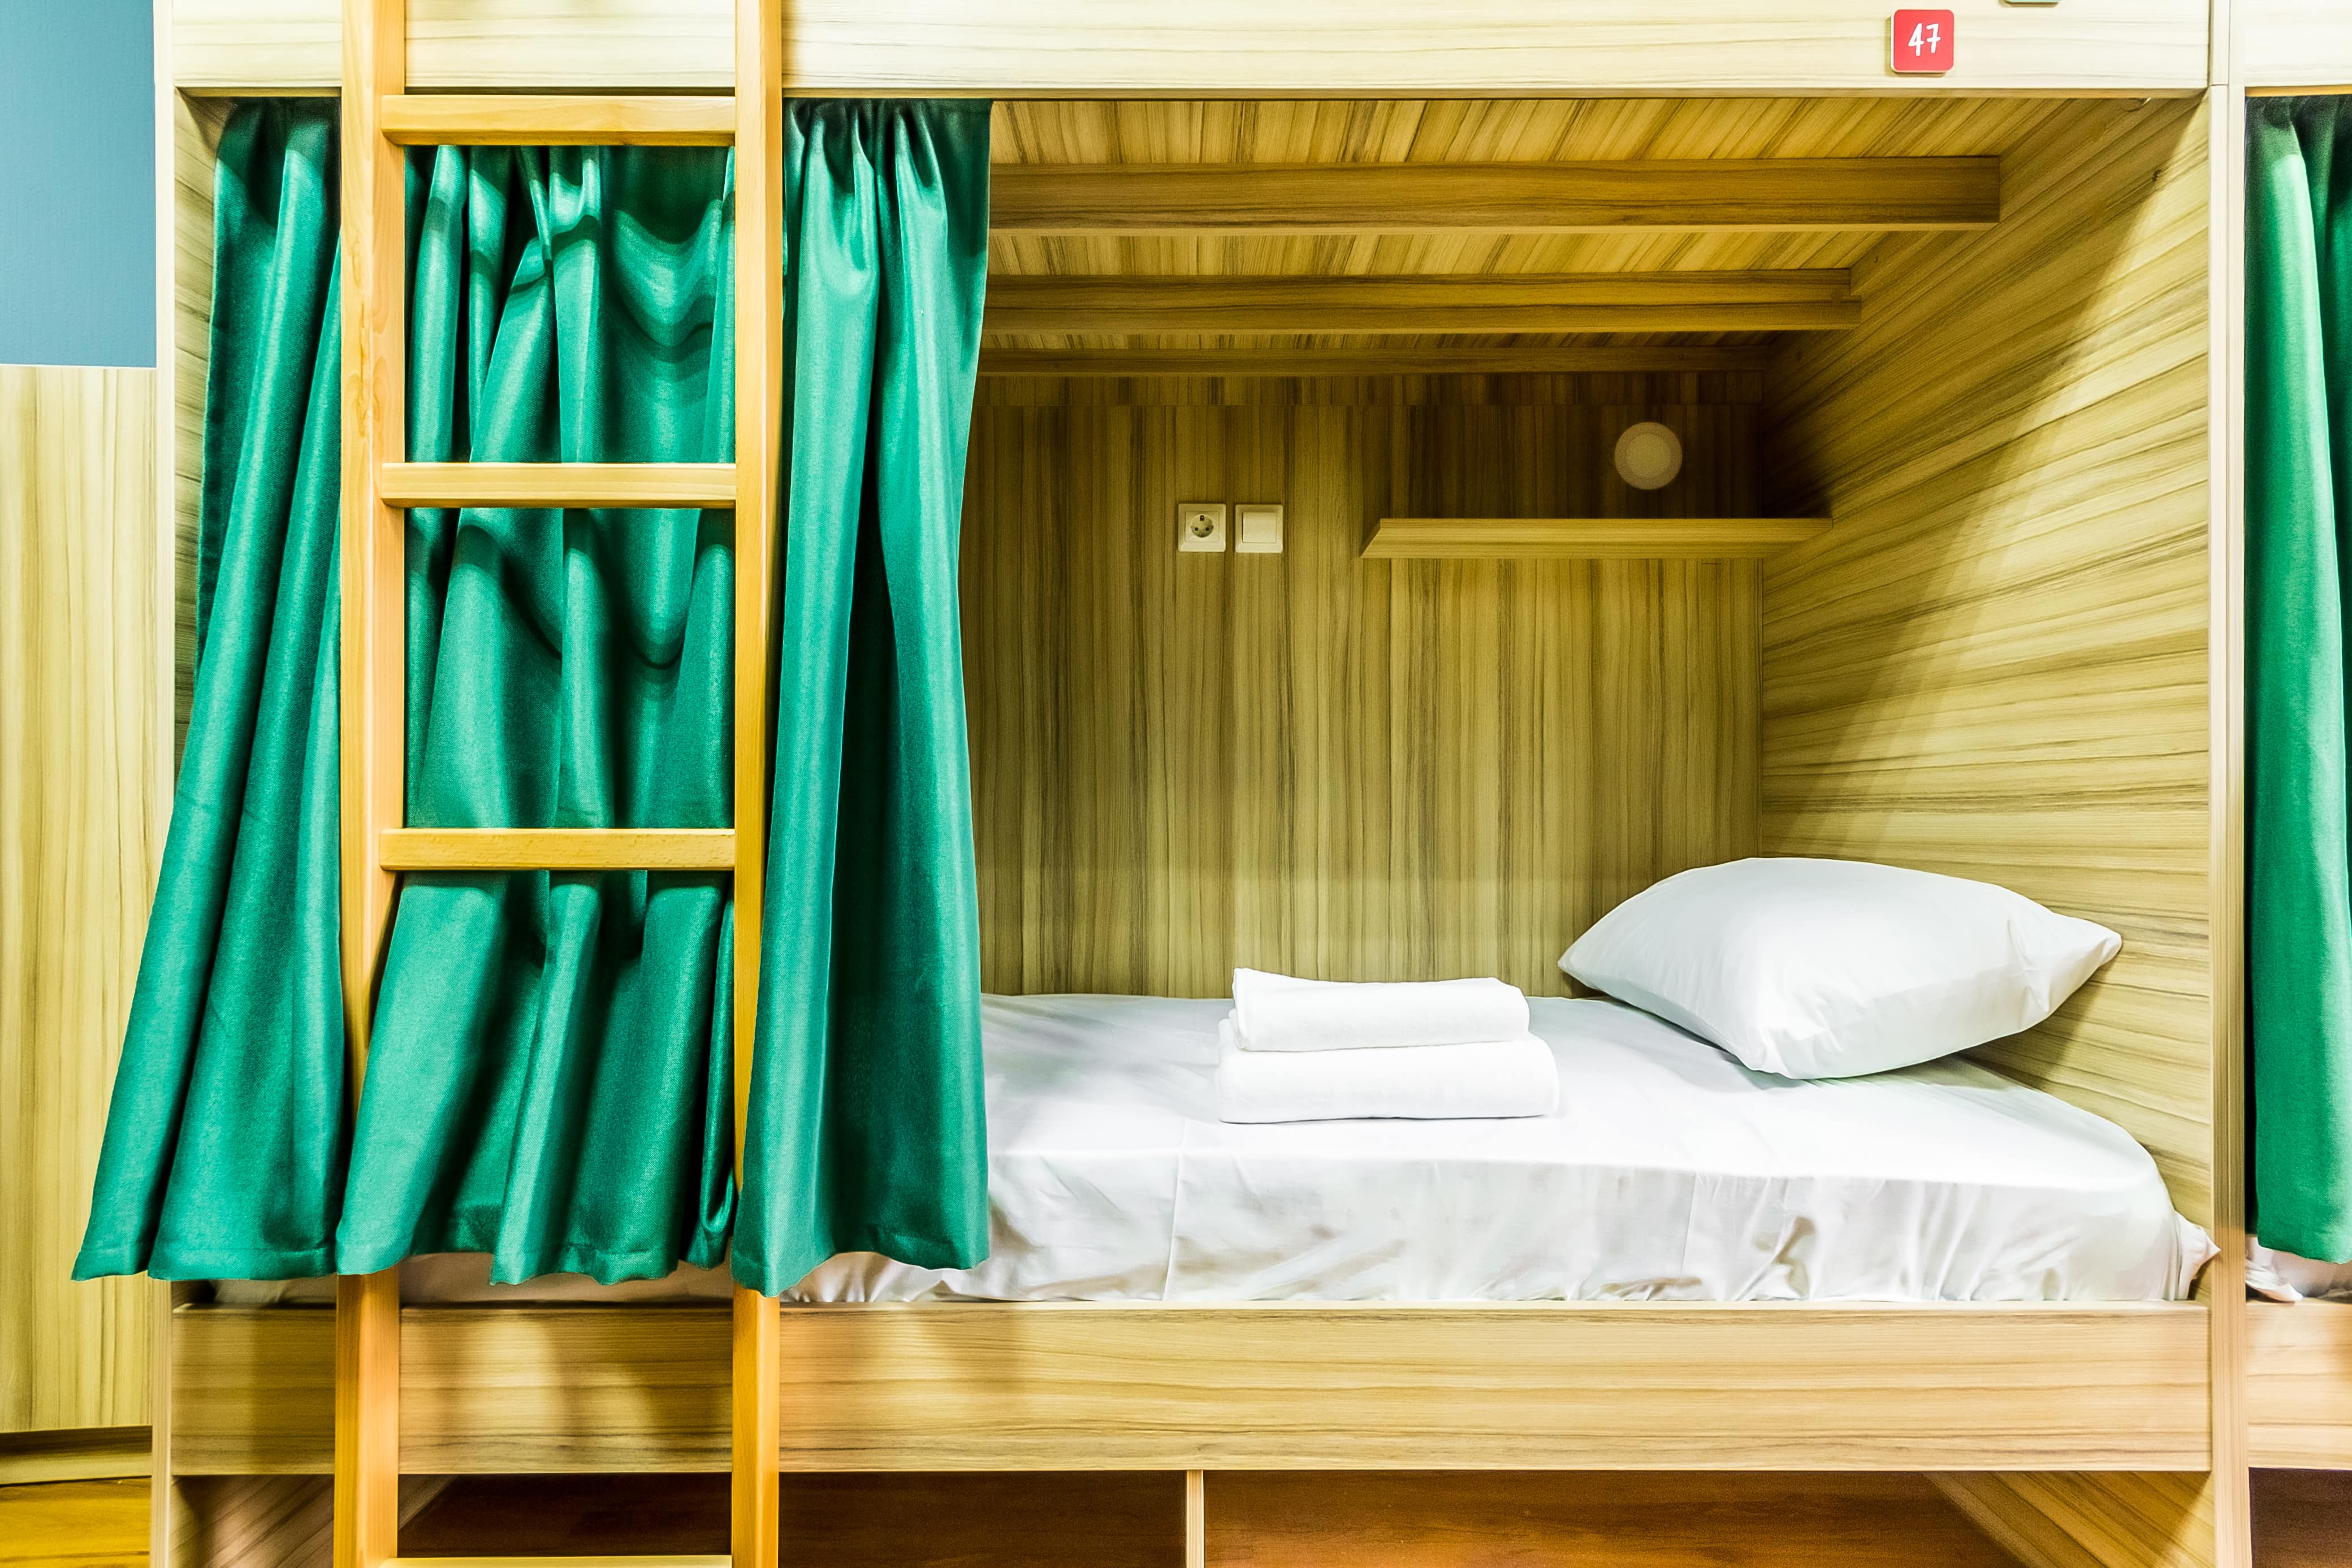 Спальное место можно закрыть красивой перламутрово-зеленой шторкой.